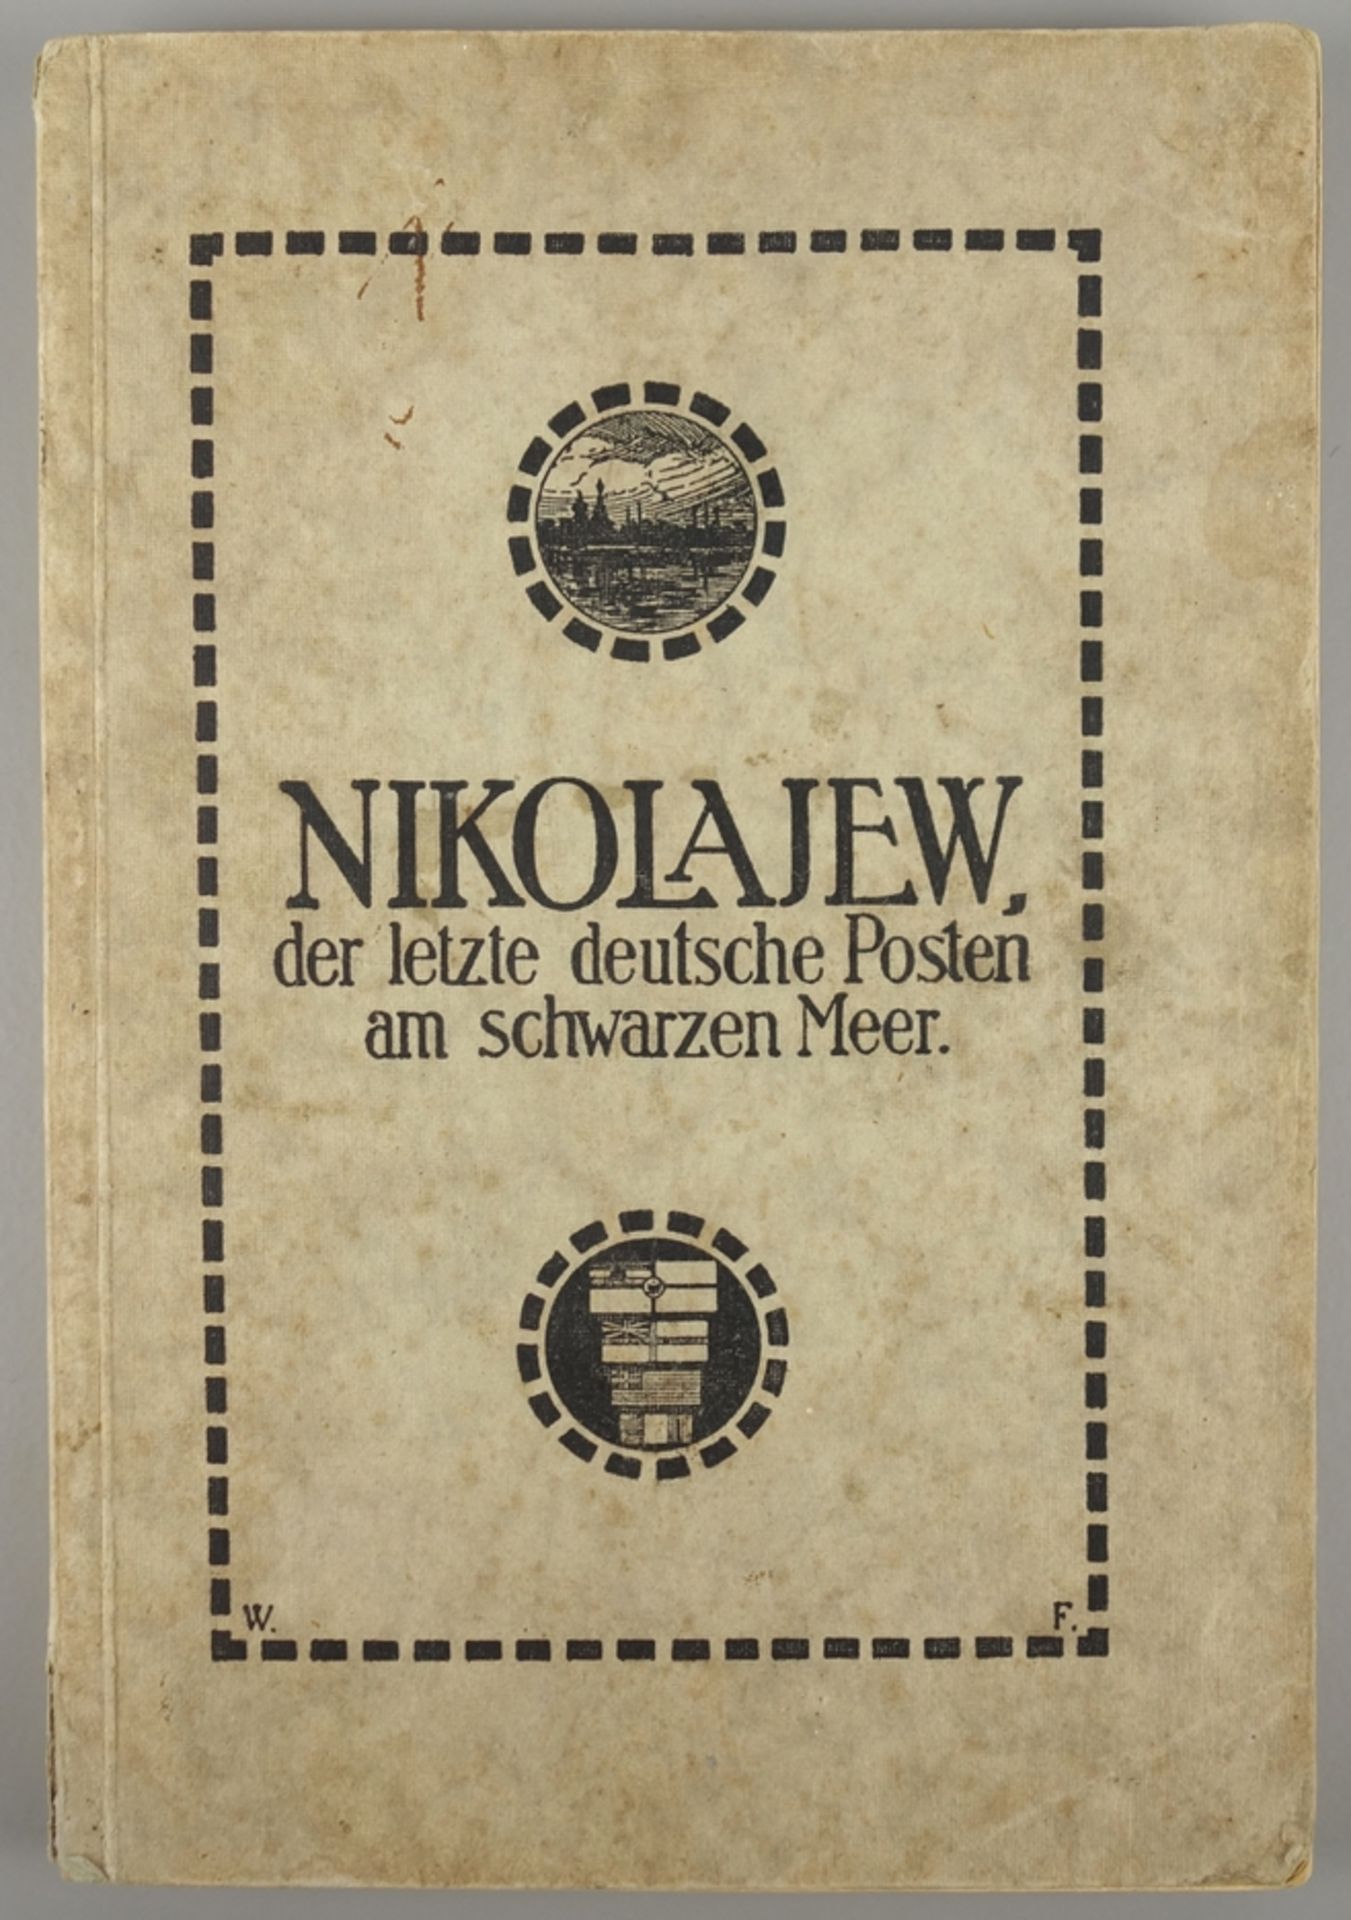 Nikolajew, der letzte deutsche Posten am schwarzen Meer, von Walter Fest, 1919